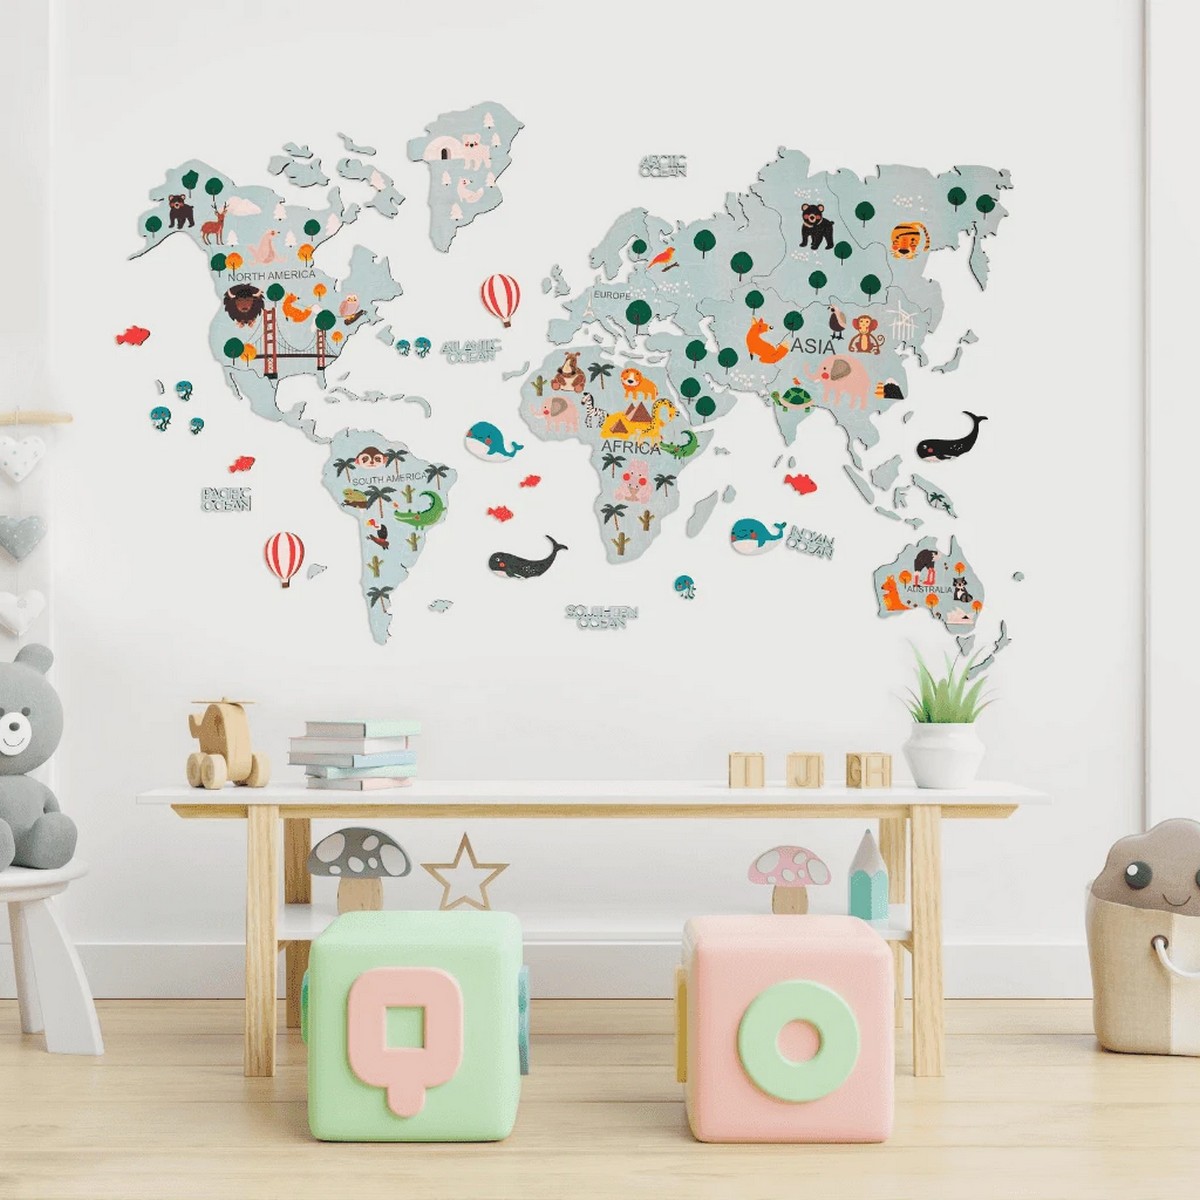 خريطة العالم خشبية للأطفال على الحائط